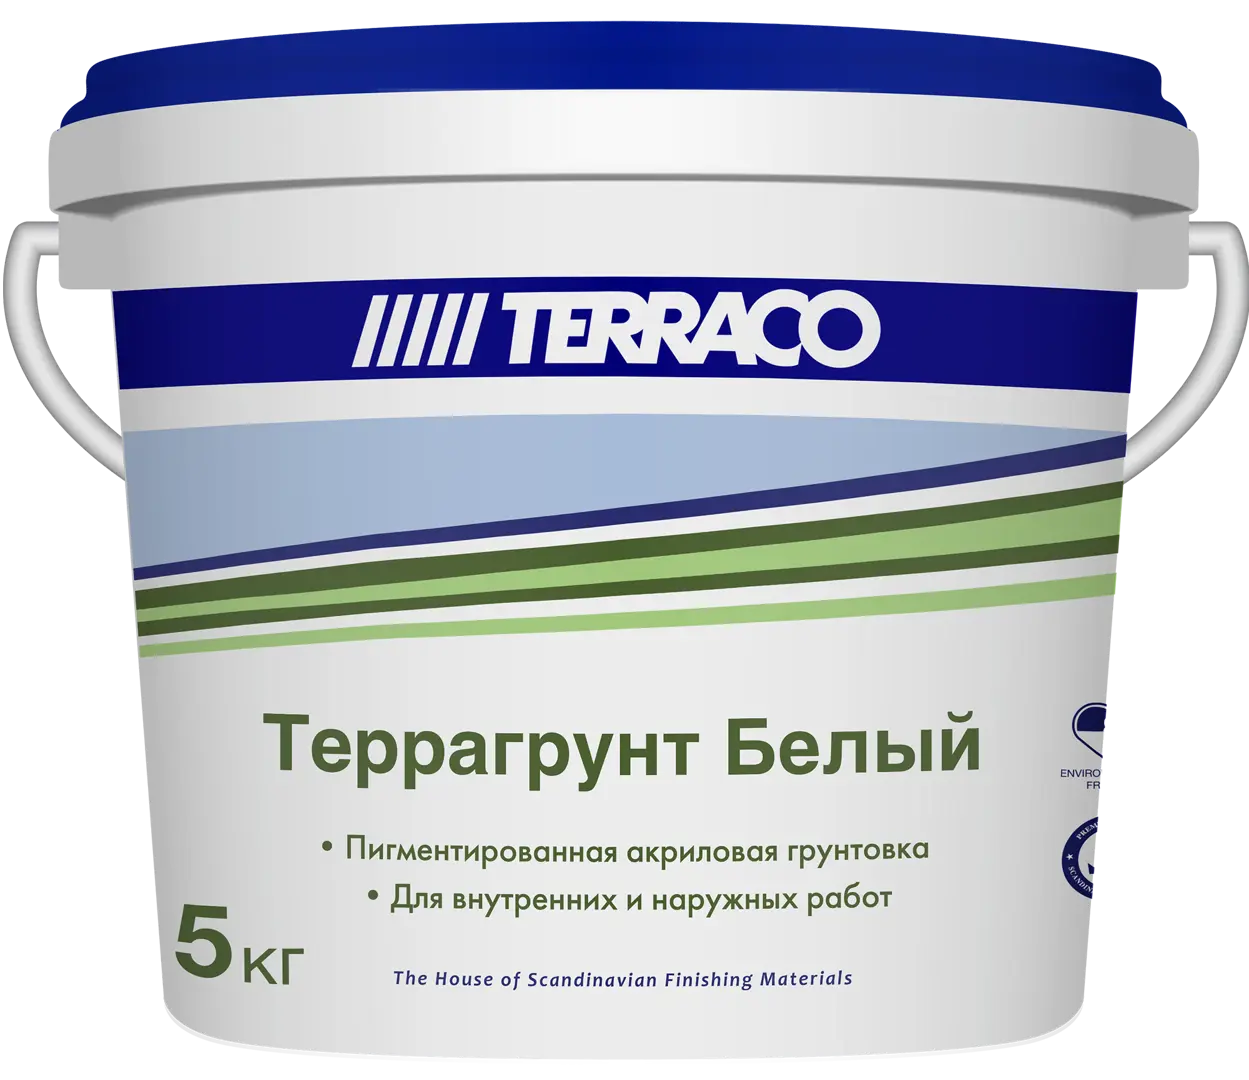 Грунтовка для внутренних и наружных работ Terraco Террагрунт белый 5 кг грунтовка для бетона terraco